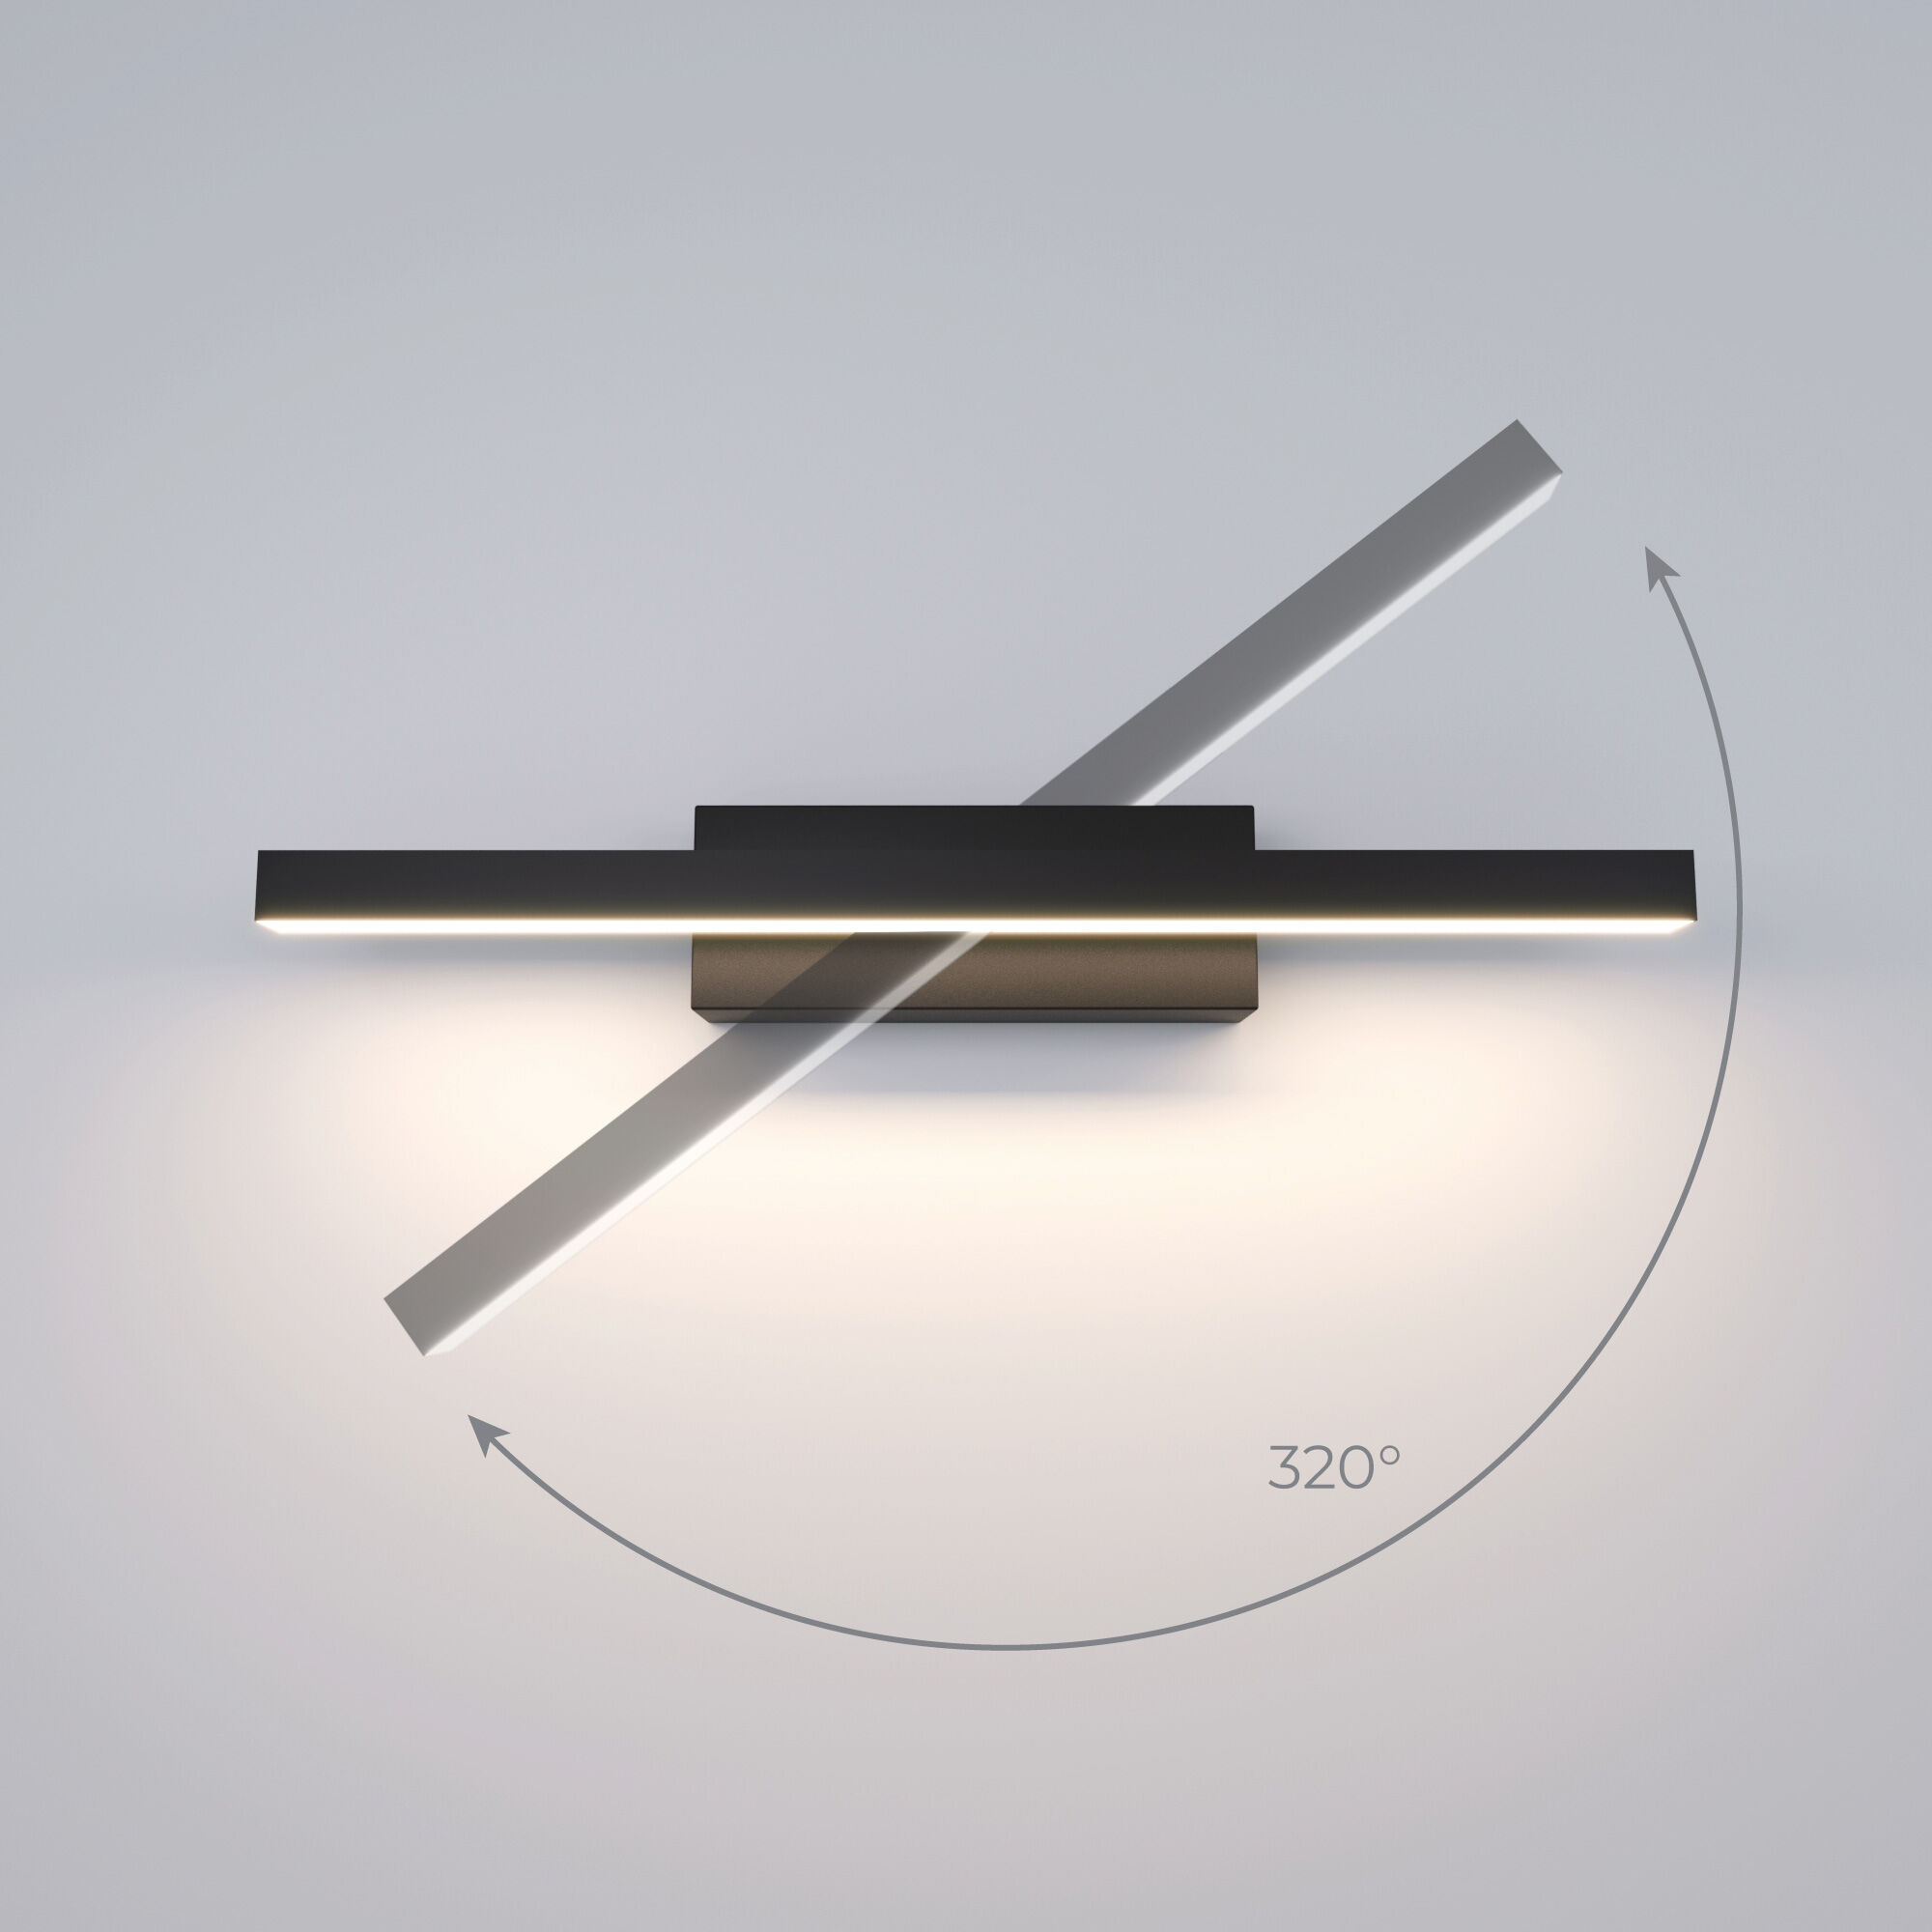 Светильник настенный светодиодный Rino 40121/LED черный